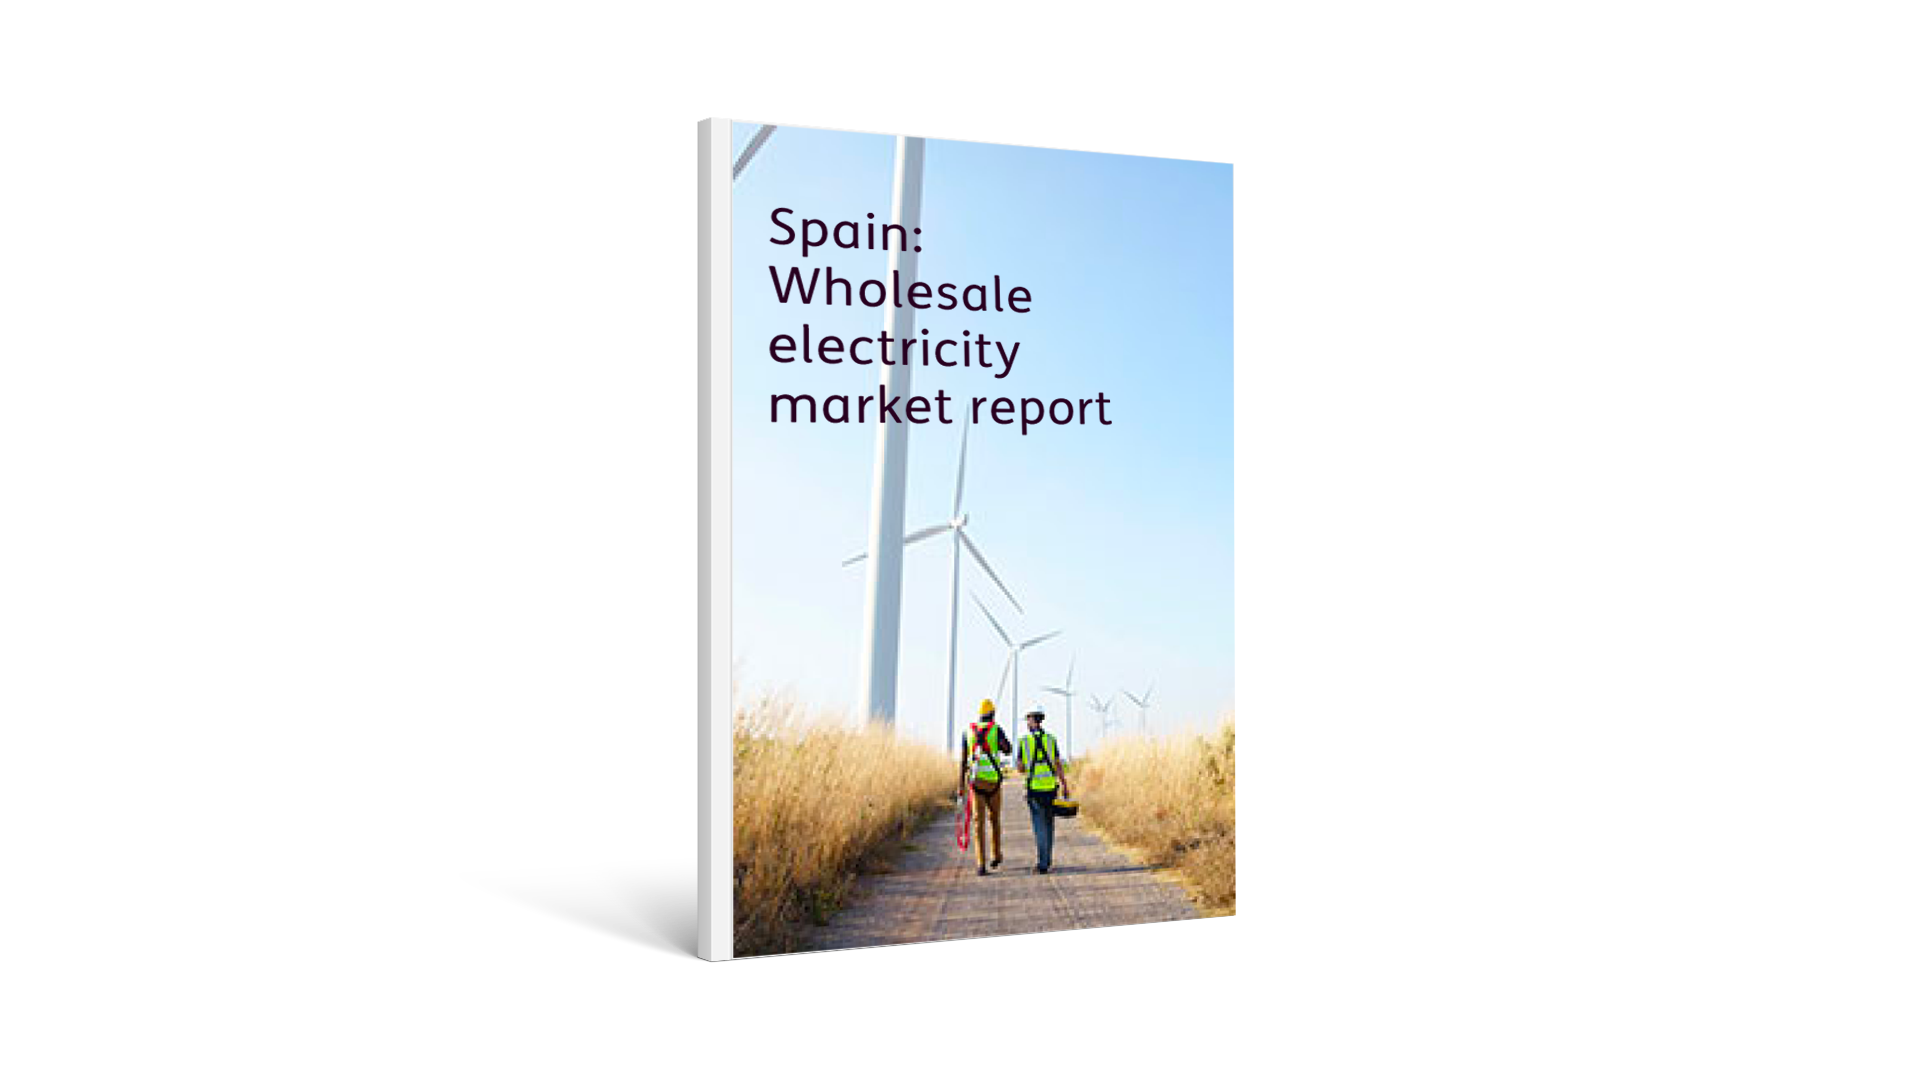 Spain: Wholesale electricity market report